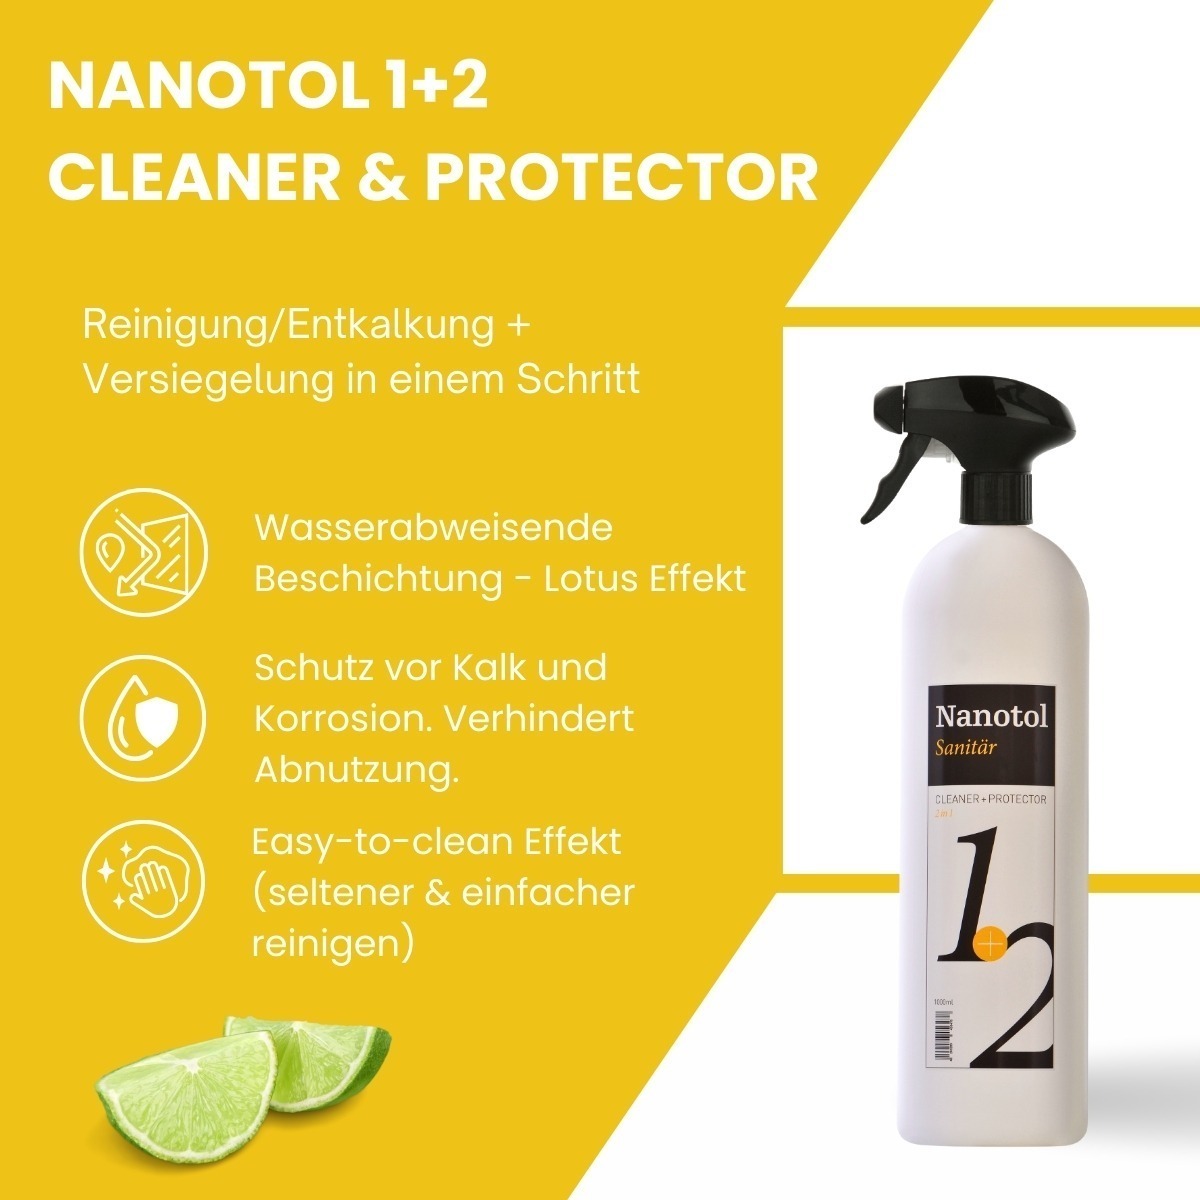 nanotol sanitaer gallery nanotol sanitaer 2in1 schnellversiegelungr NS21 anwendung badezimmer